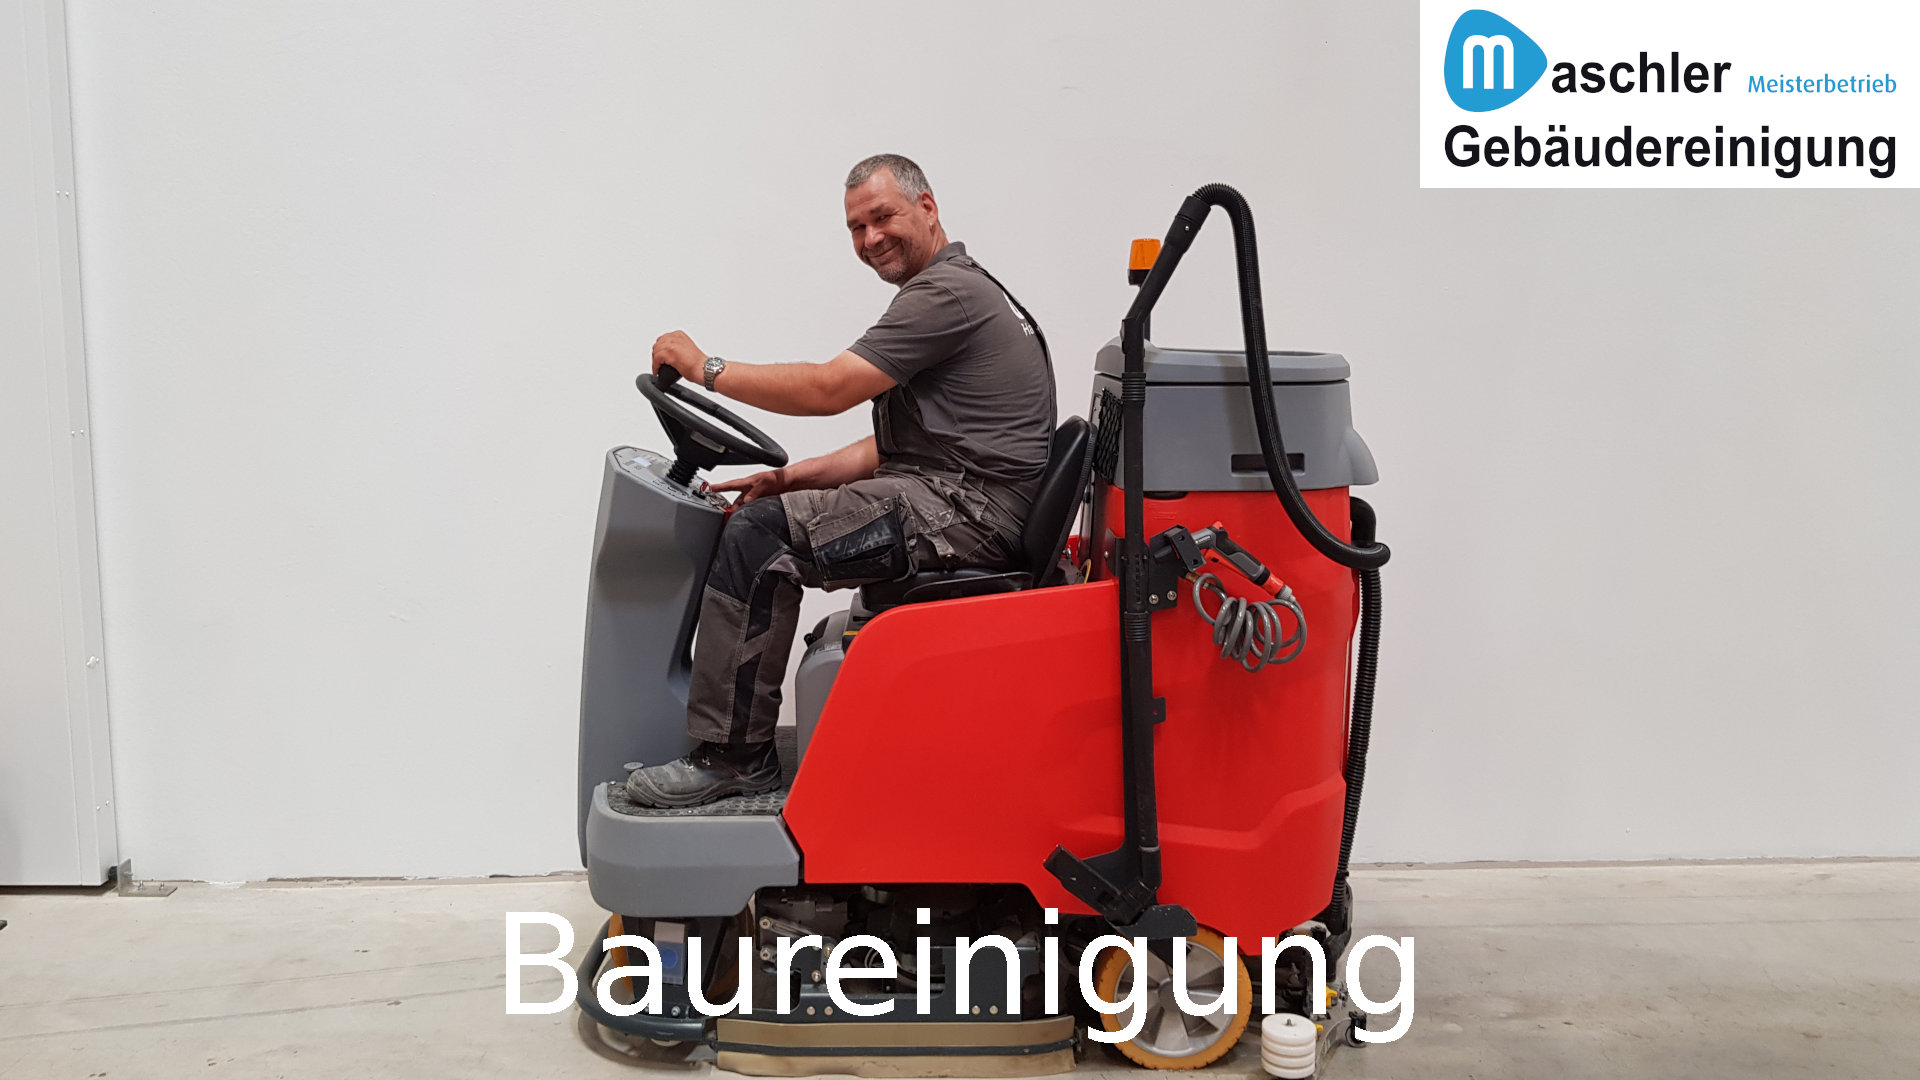 Baureinigung - Grob & Fein - Gebäudereinigung Maschler GmbH